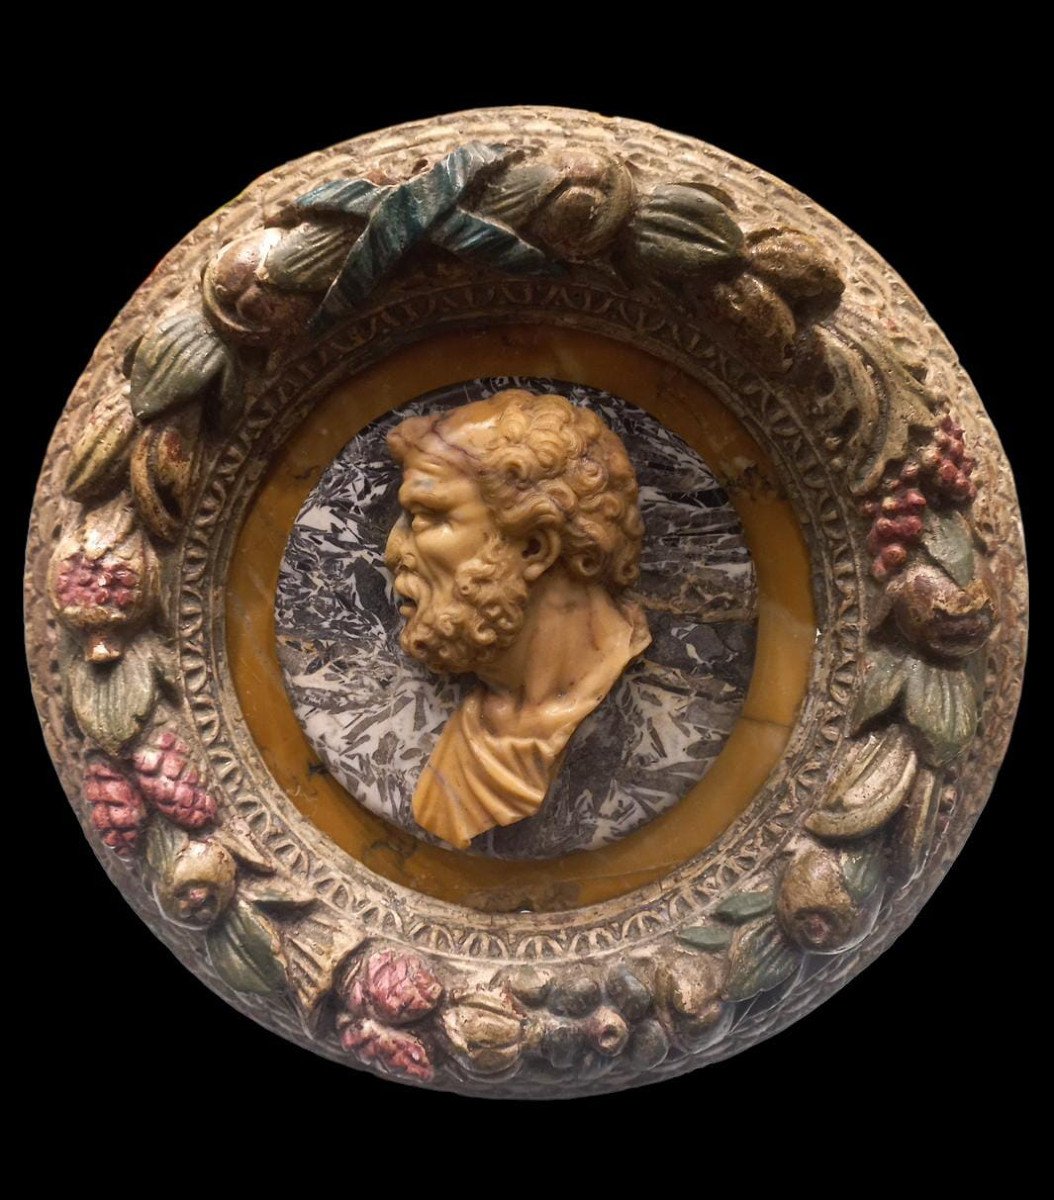 Altorilievo in marmo giallo antico raffigurante un profilo virile